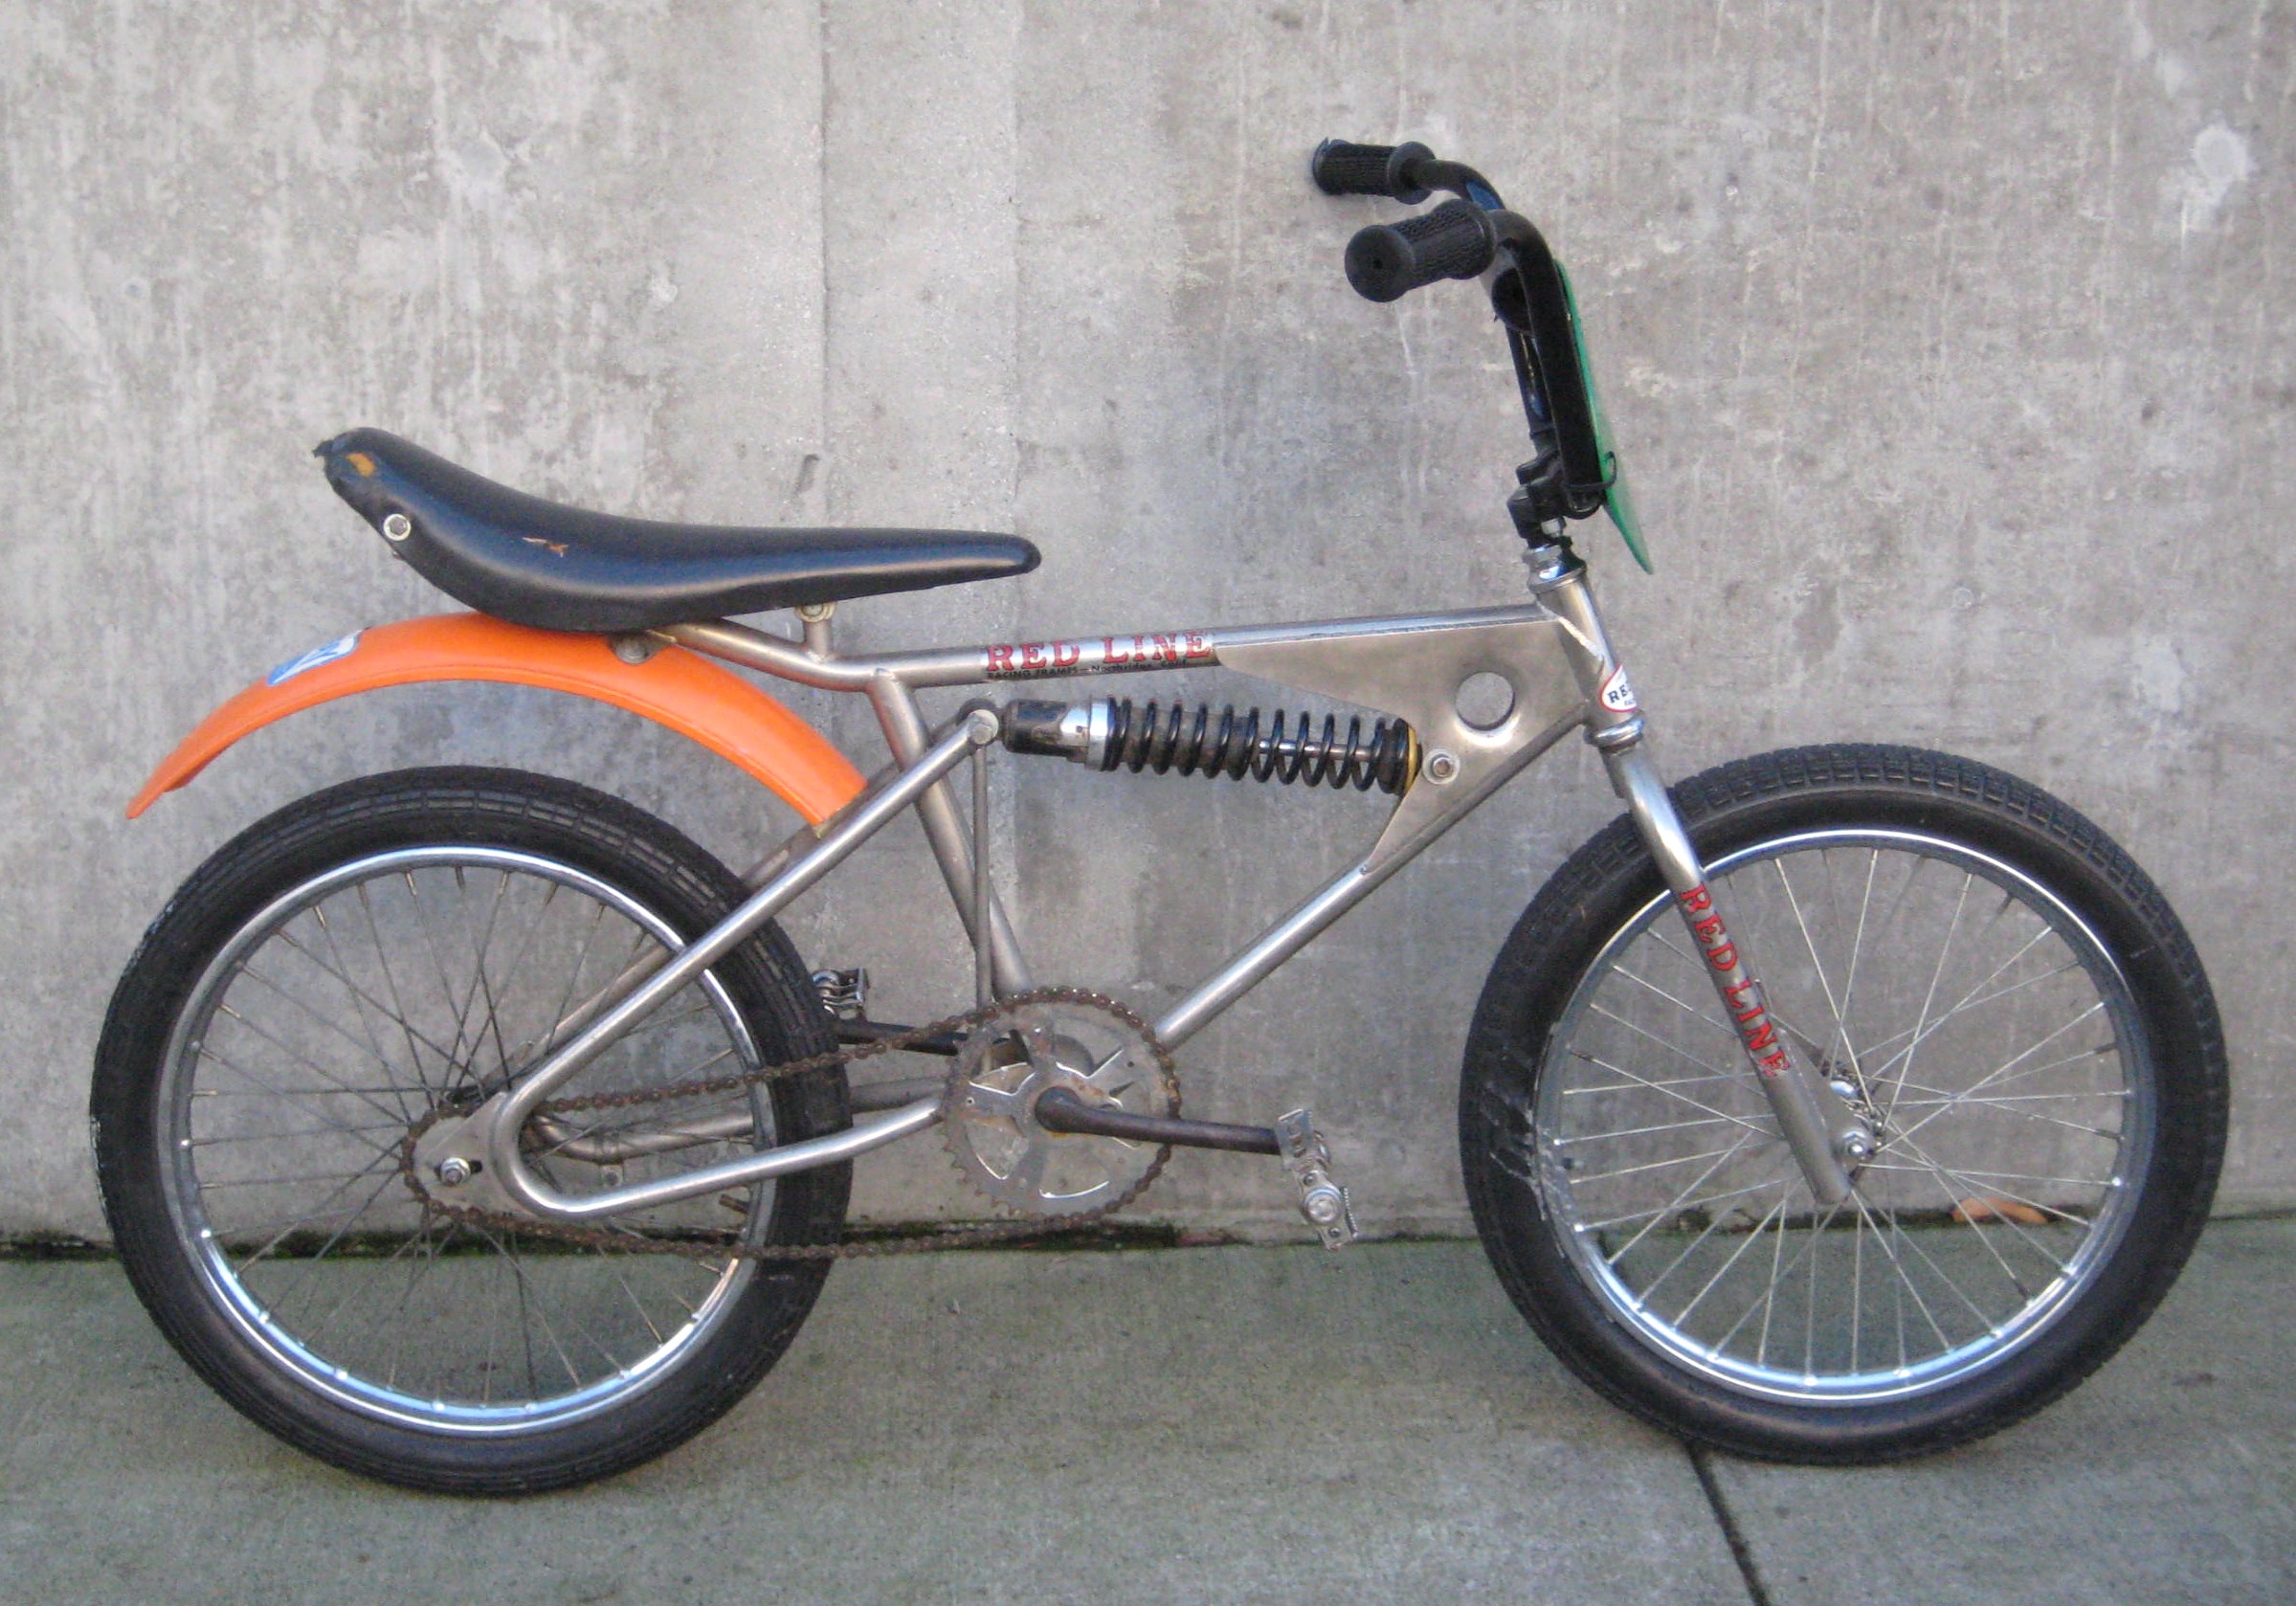 motorized bmx bike